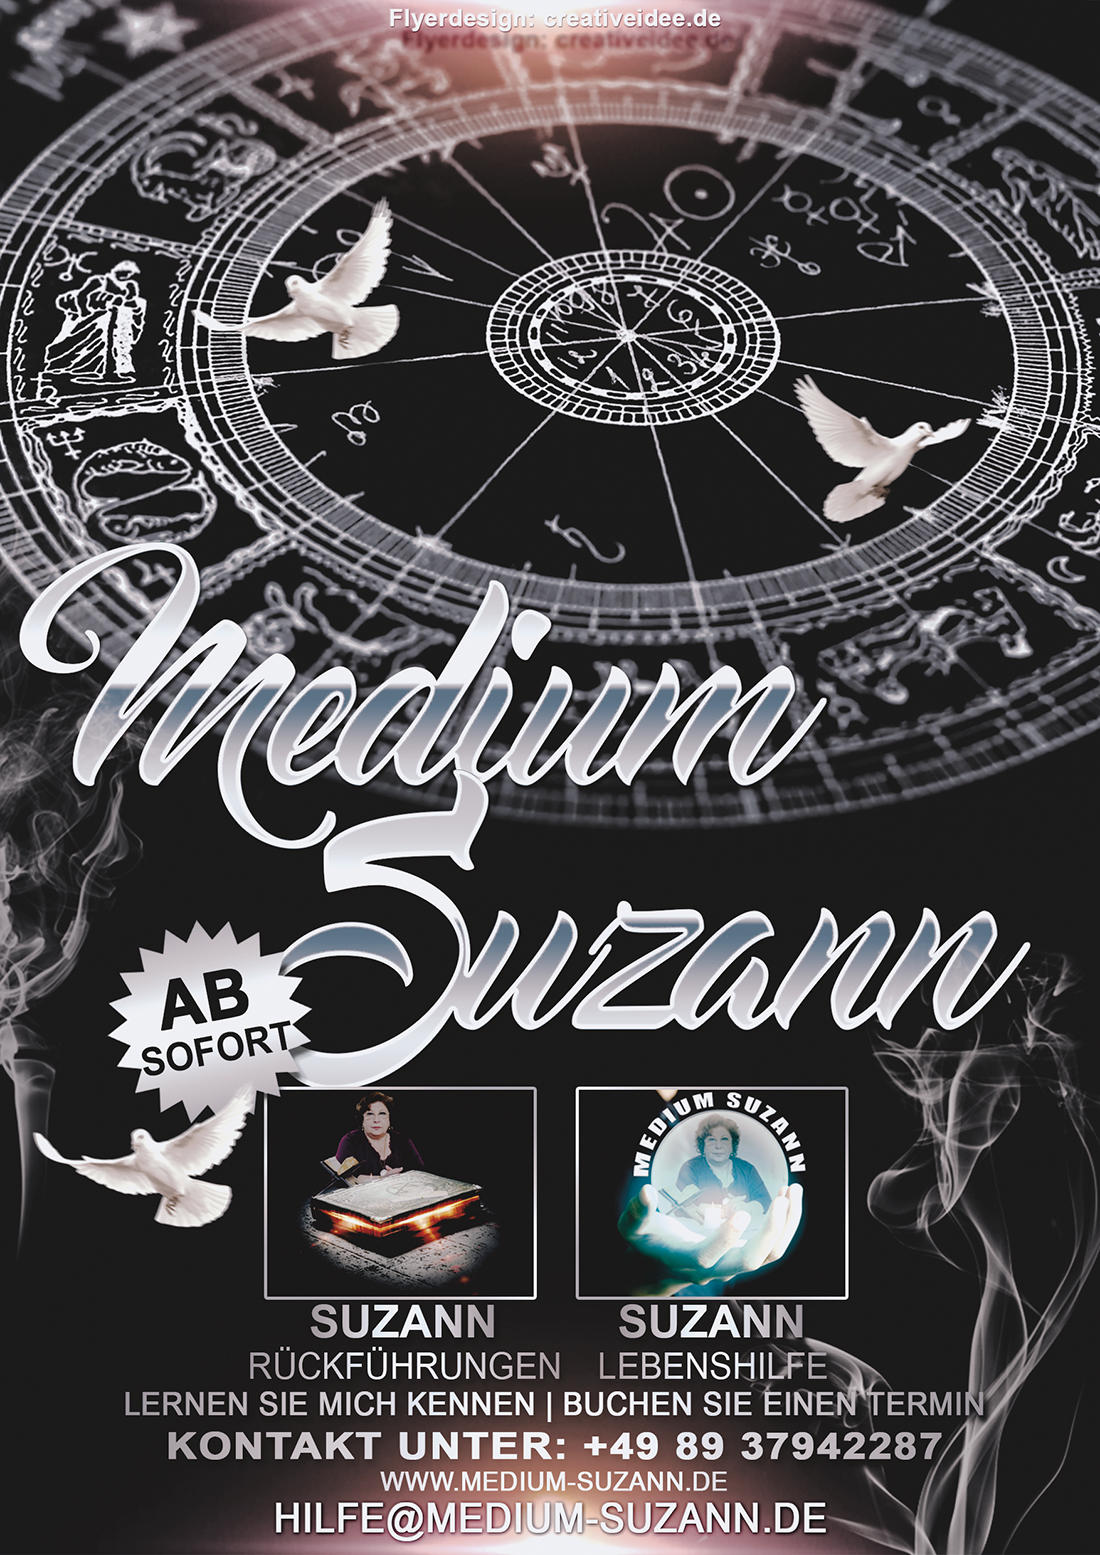 Medium Suzann -  Suzann Stiegler München